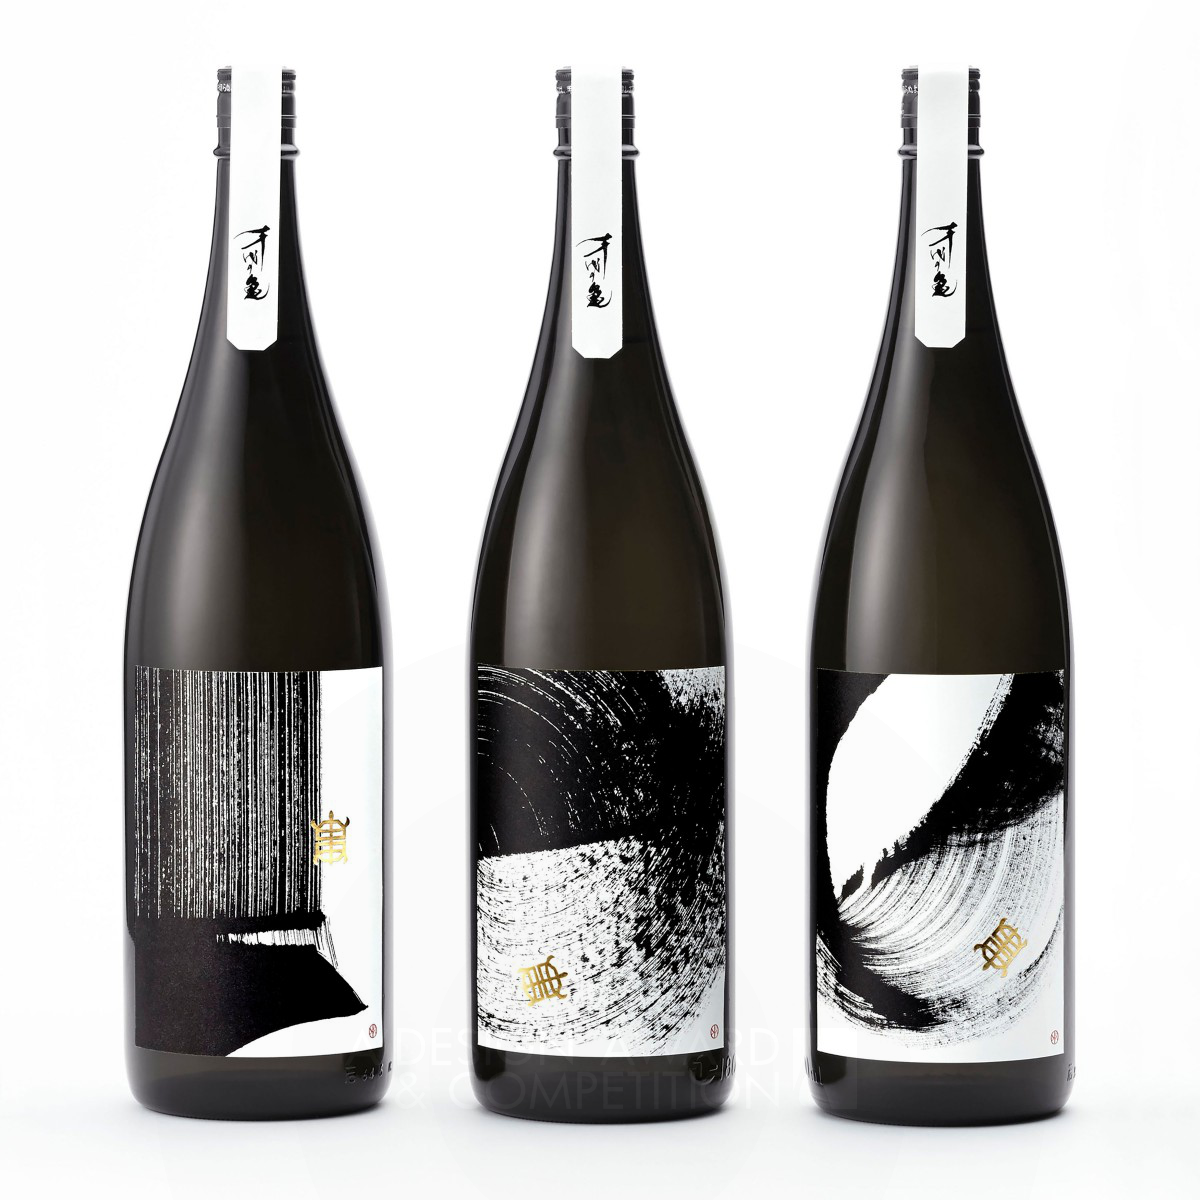 Souryu <b>sake package design